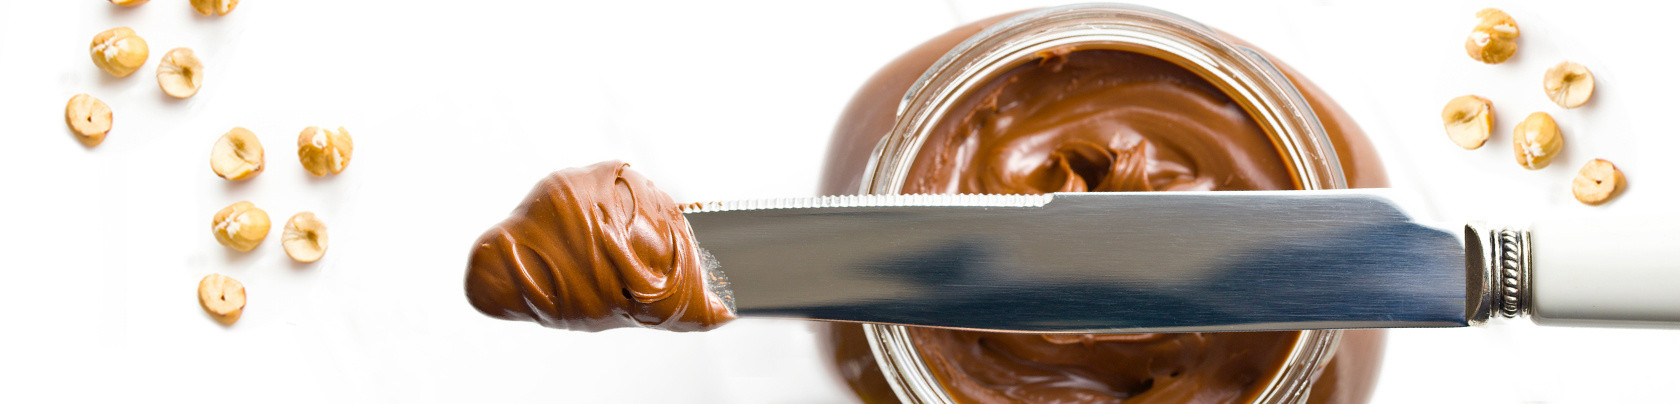 La storia della Nutella, la crema spalmabile che ha conquistato il mondo